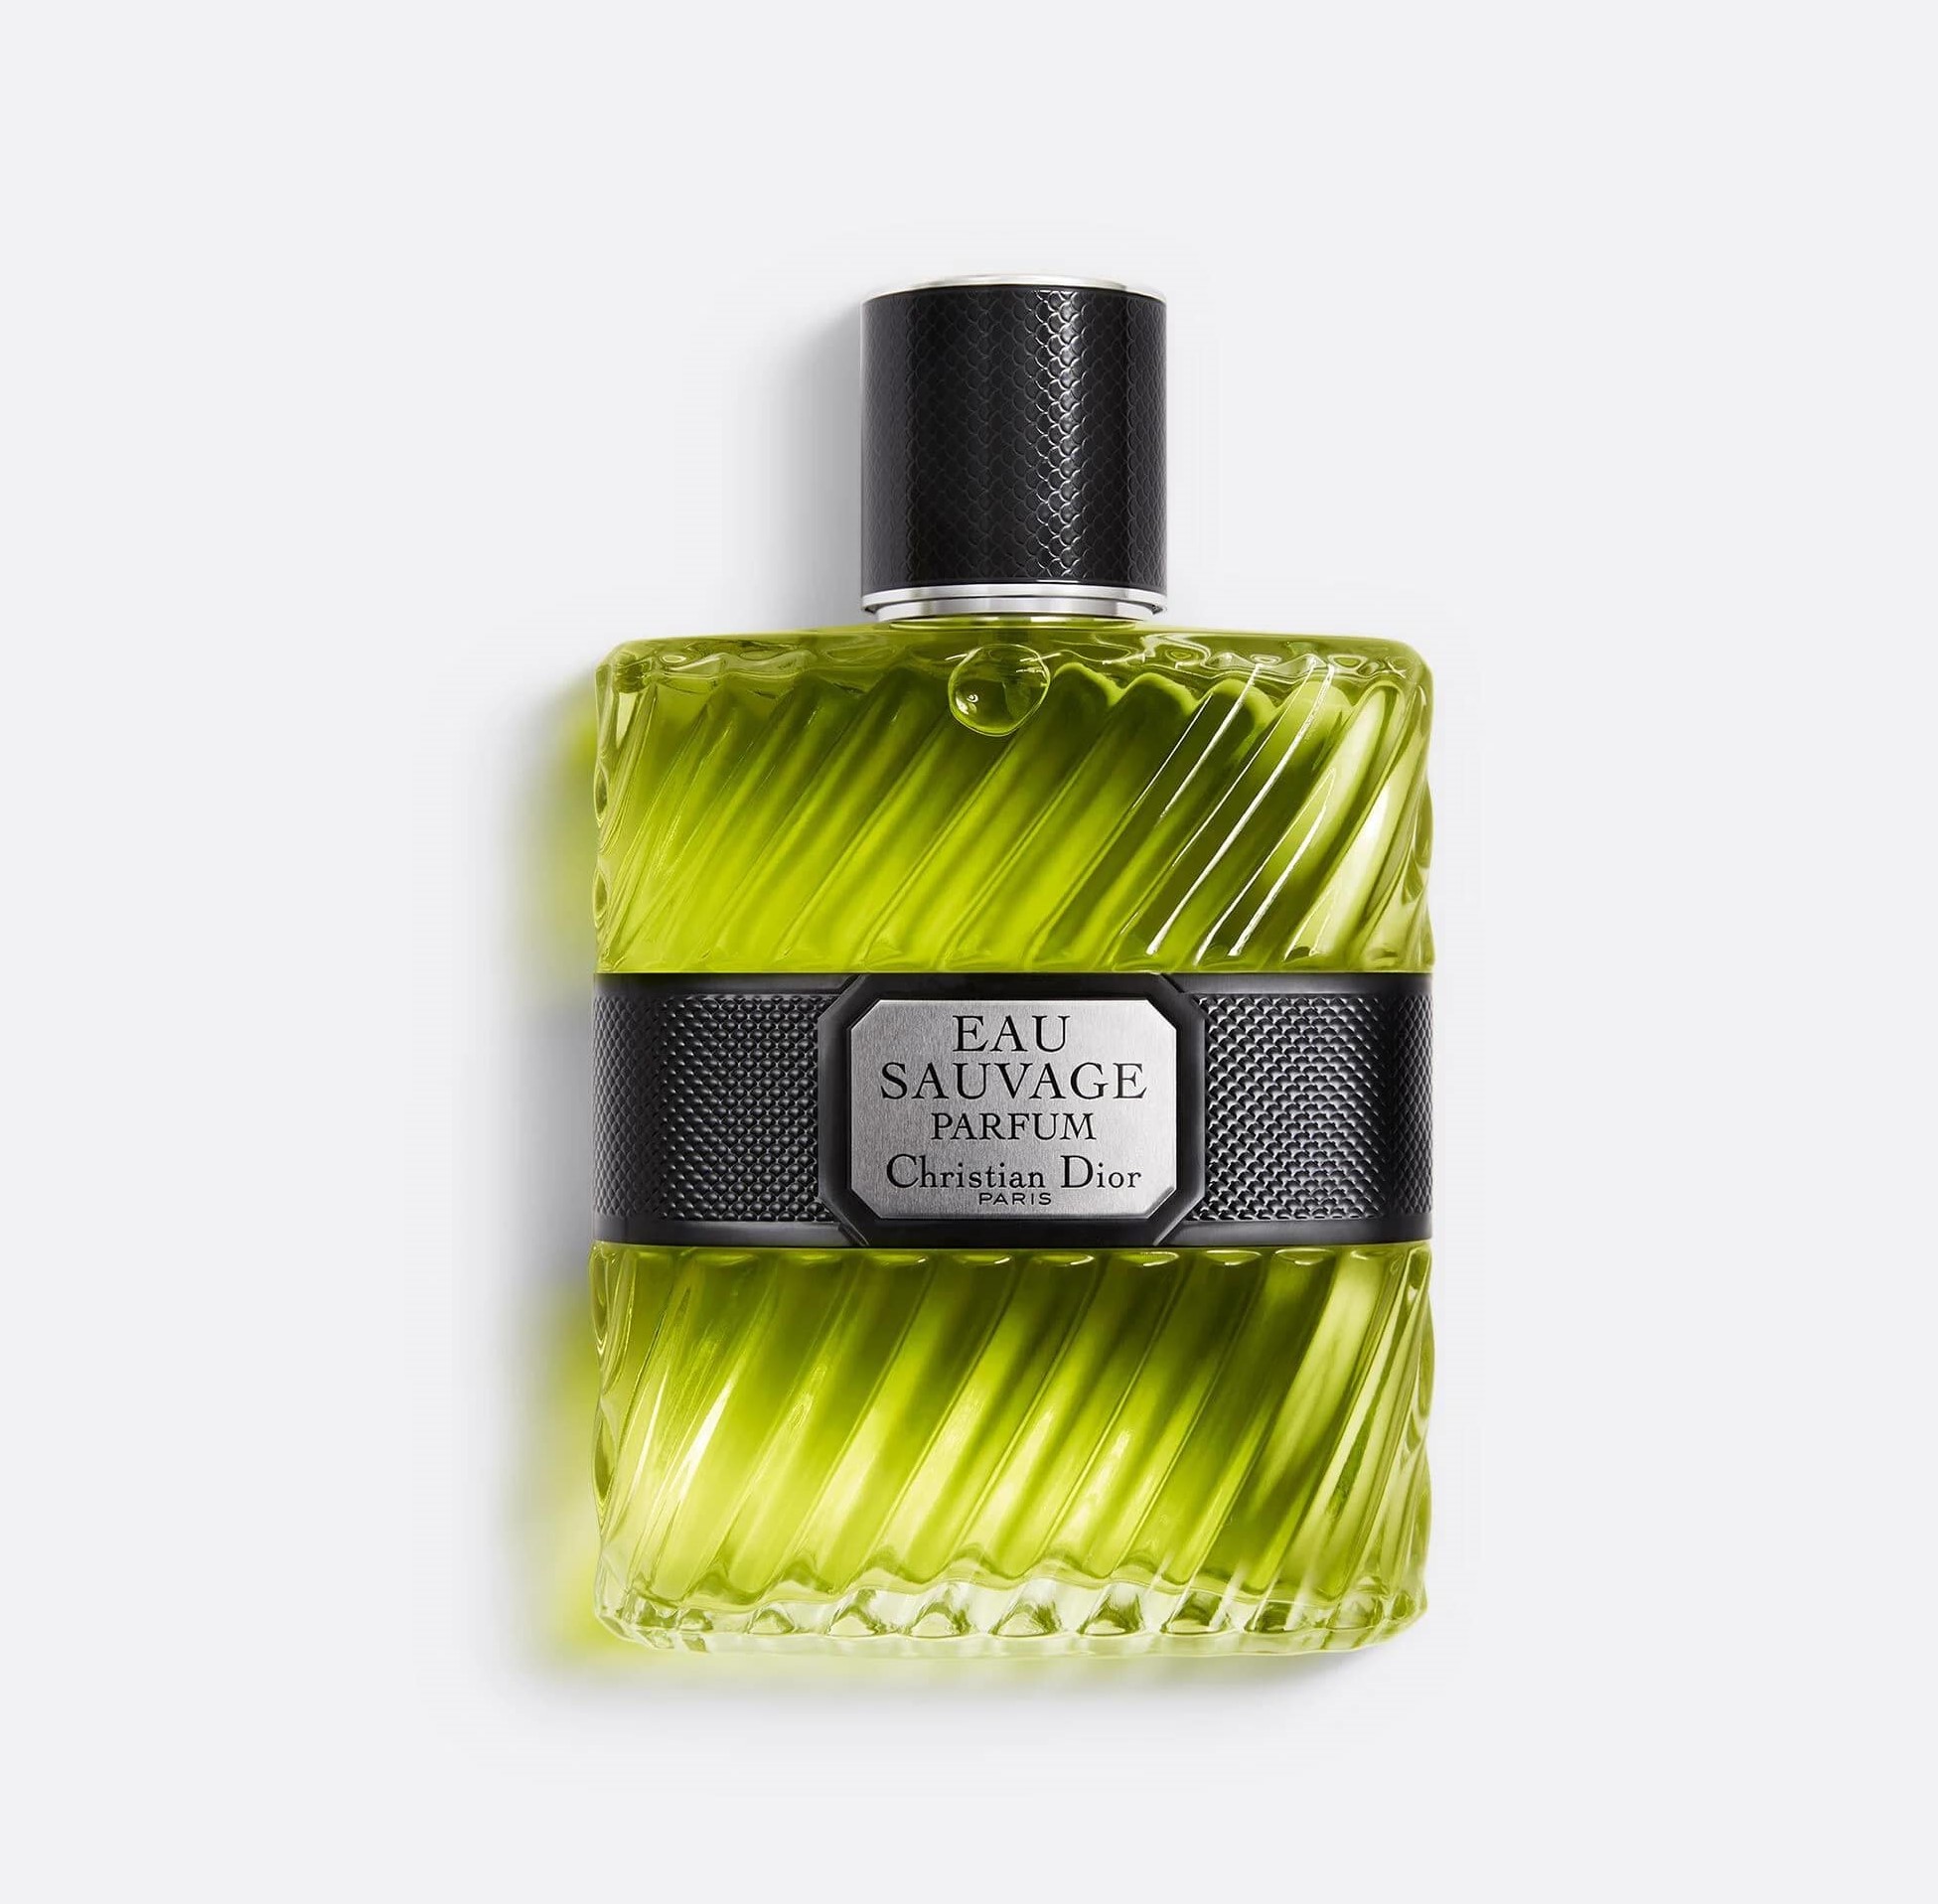 EAU SAUVAGE PARFUM EDP Perfume for Men by Dior